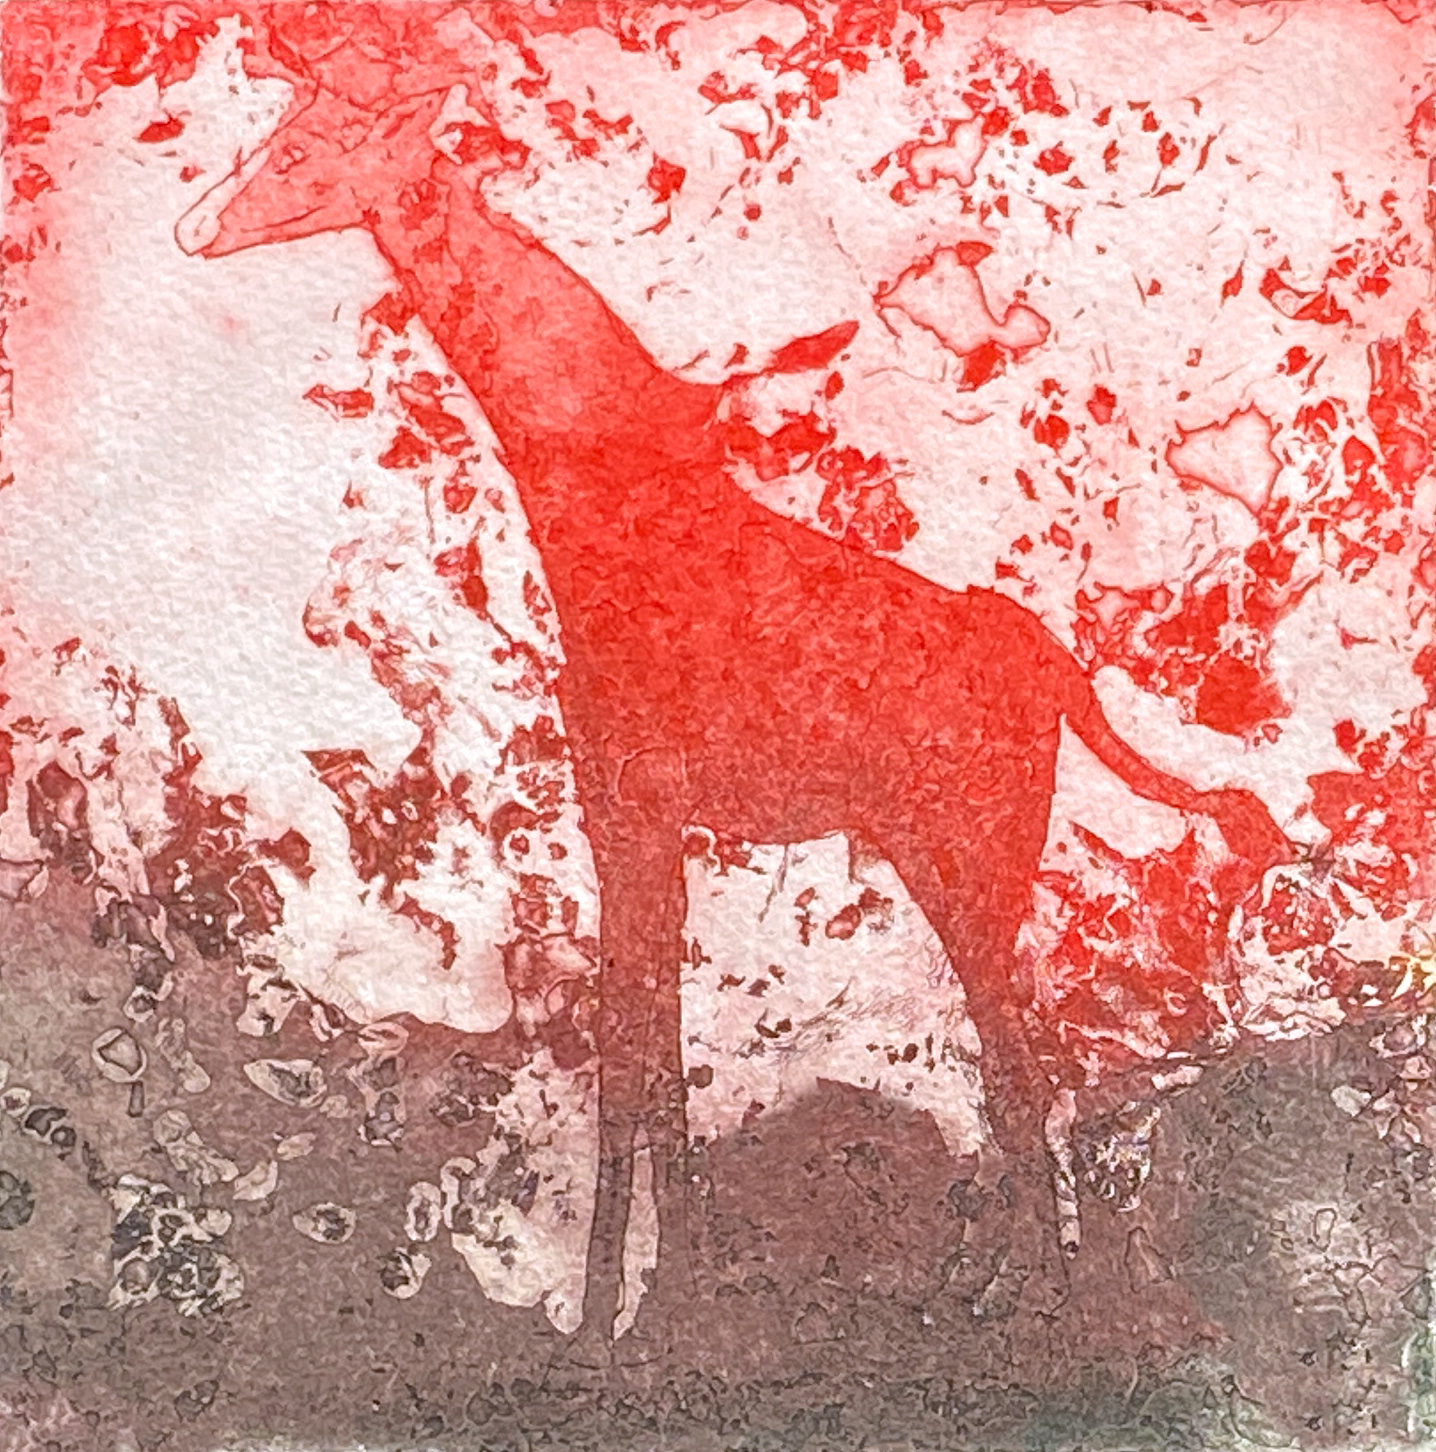 Jirafa roja, Radierung mit Aquatinta und Jaspeado (Marmorierung) 20 x 20 cm, 2022 © Agnes Christine Katschner